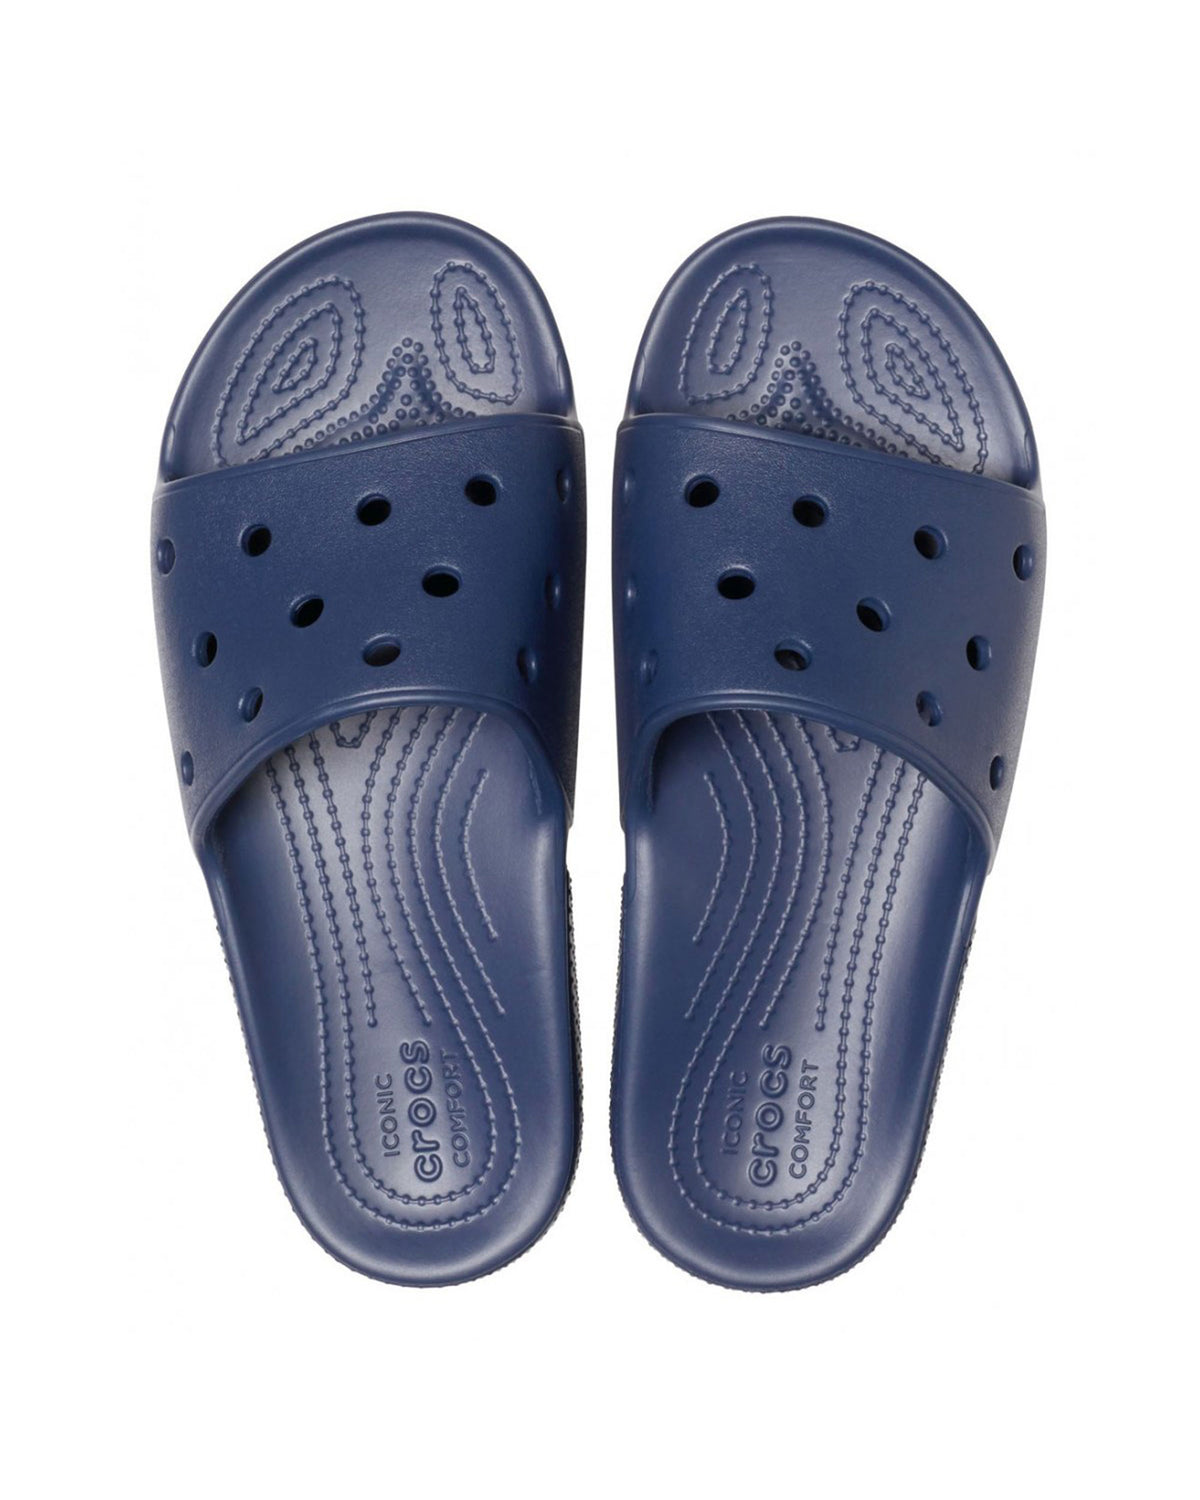 Crocs Classic Slide Blue